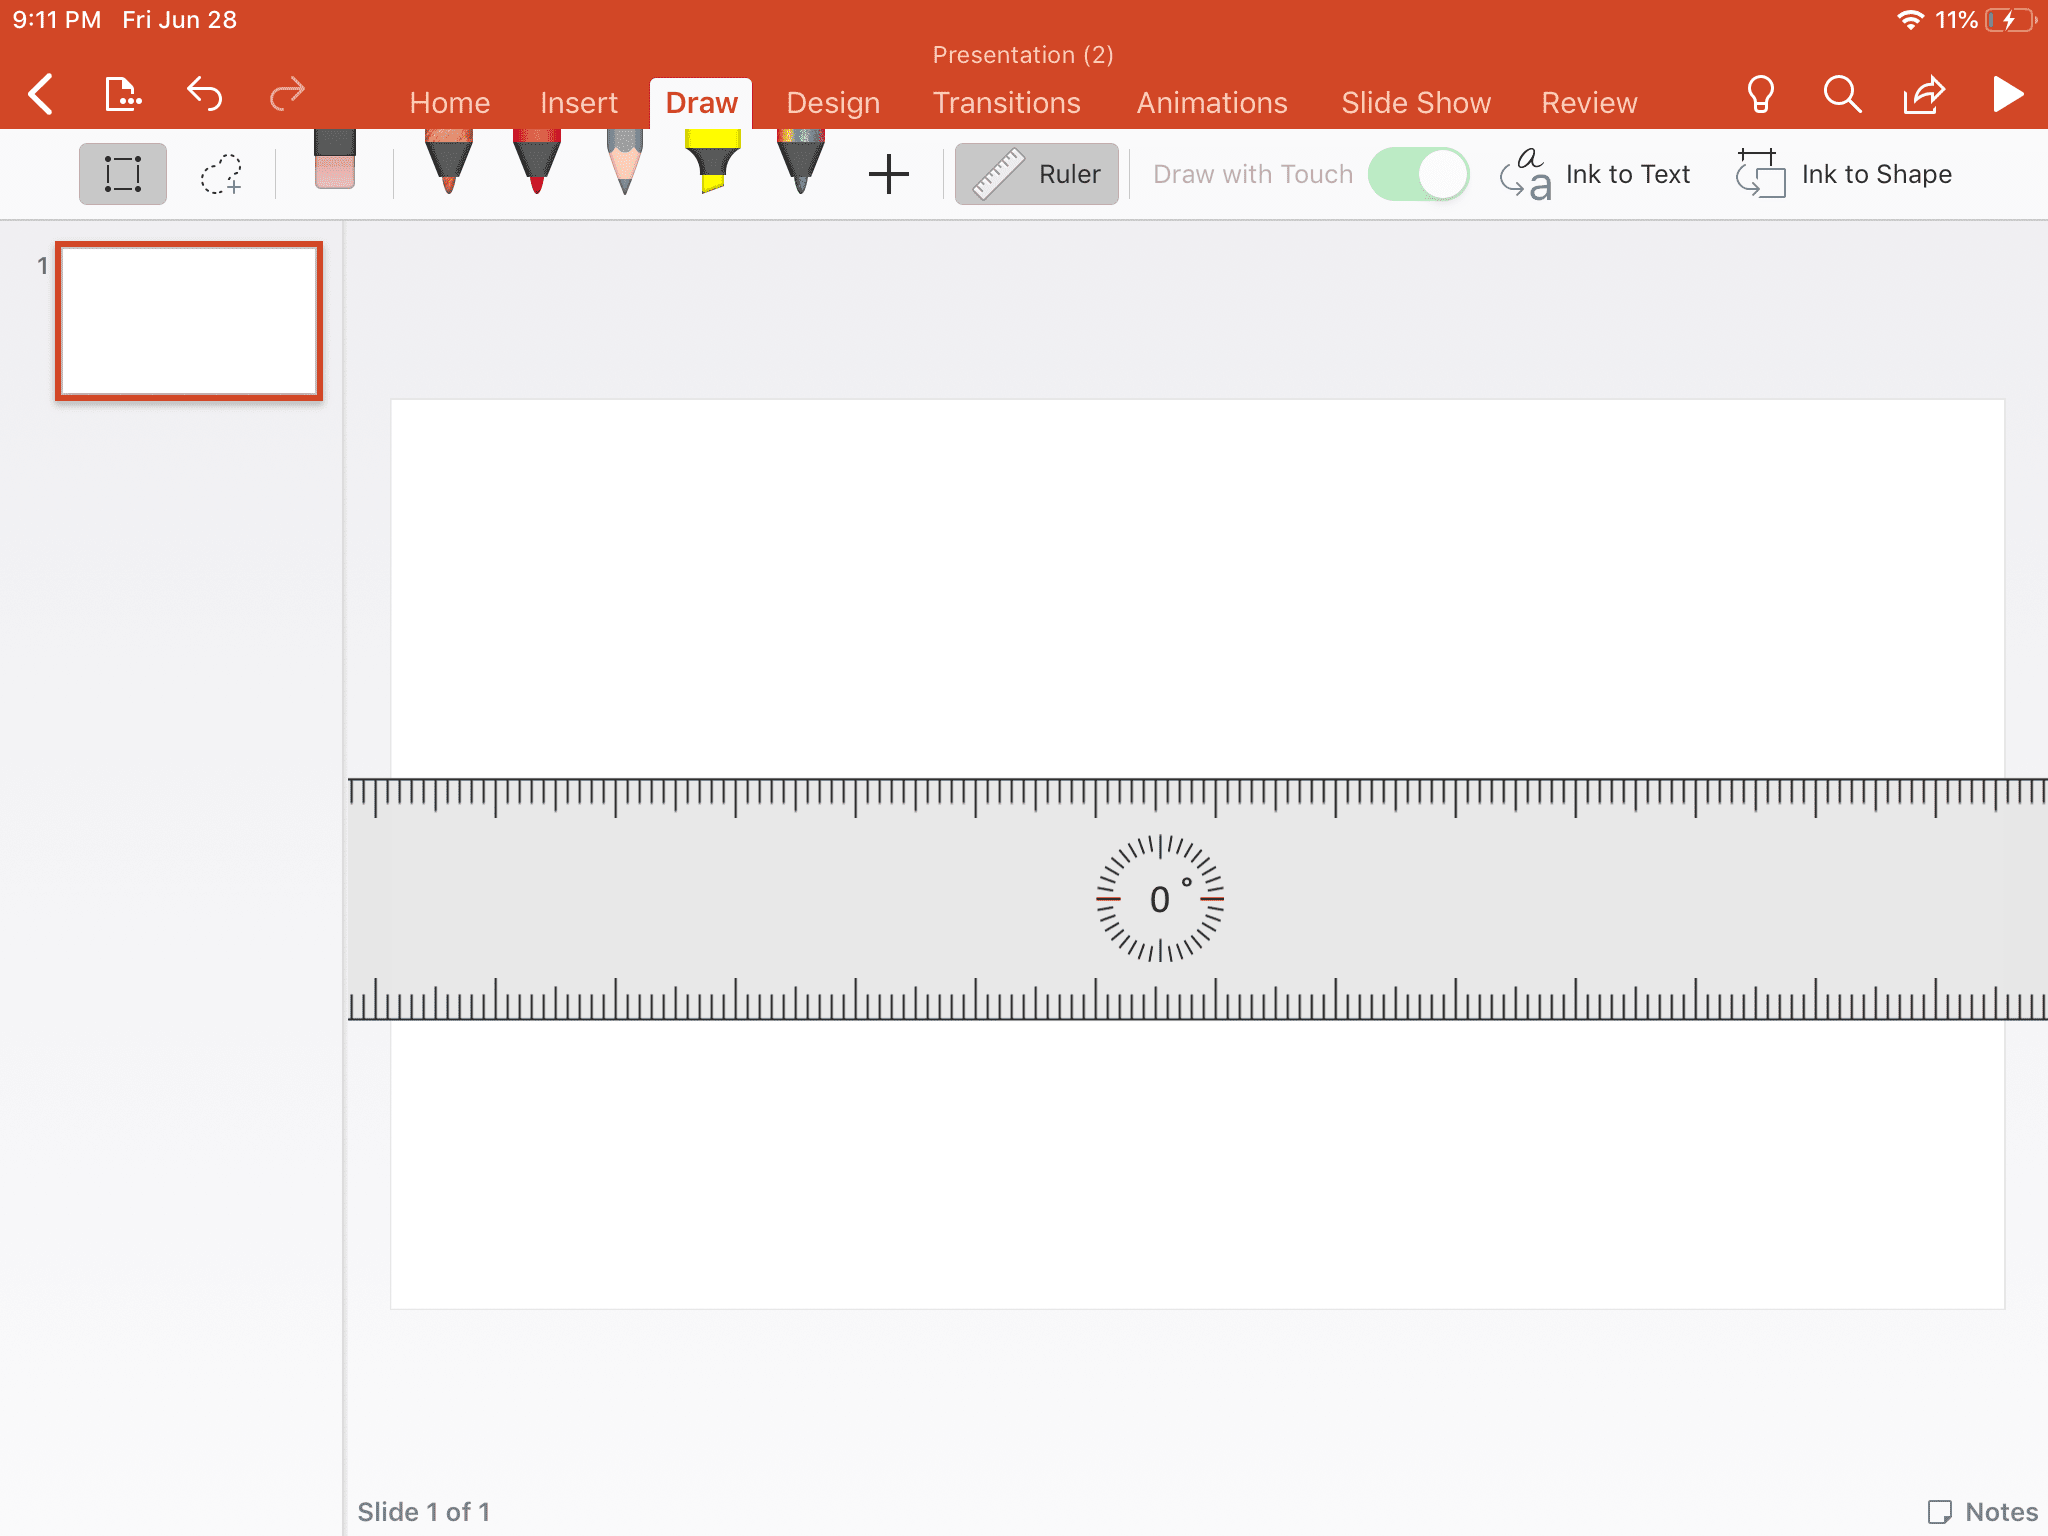 Använd linjalverktyget i Powerpoint för att skapa en rak linje